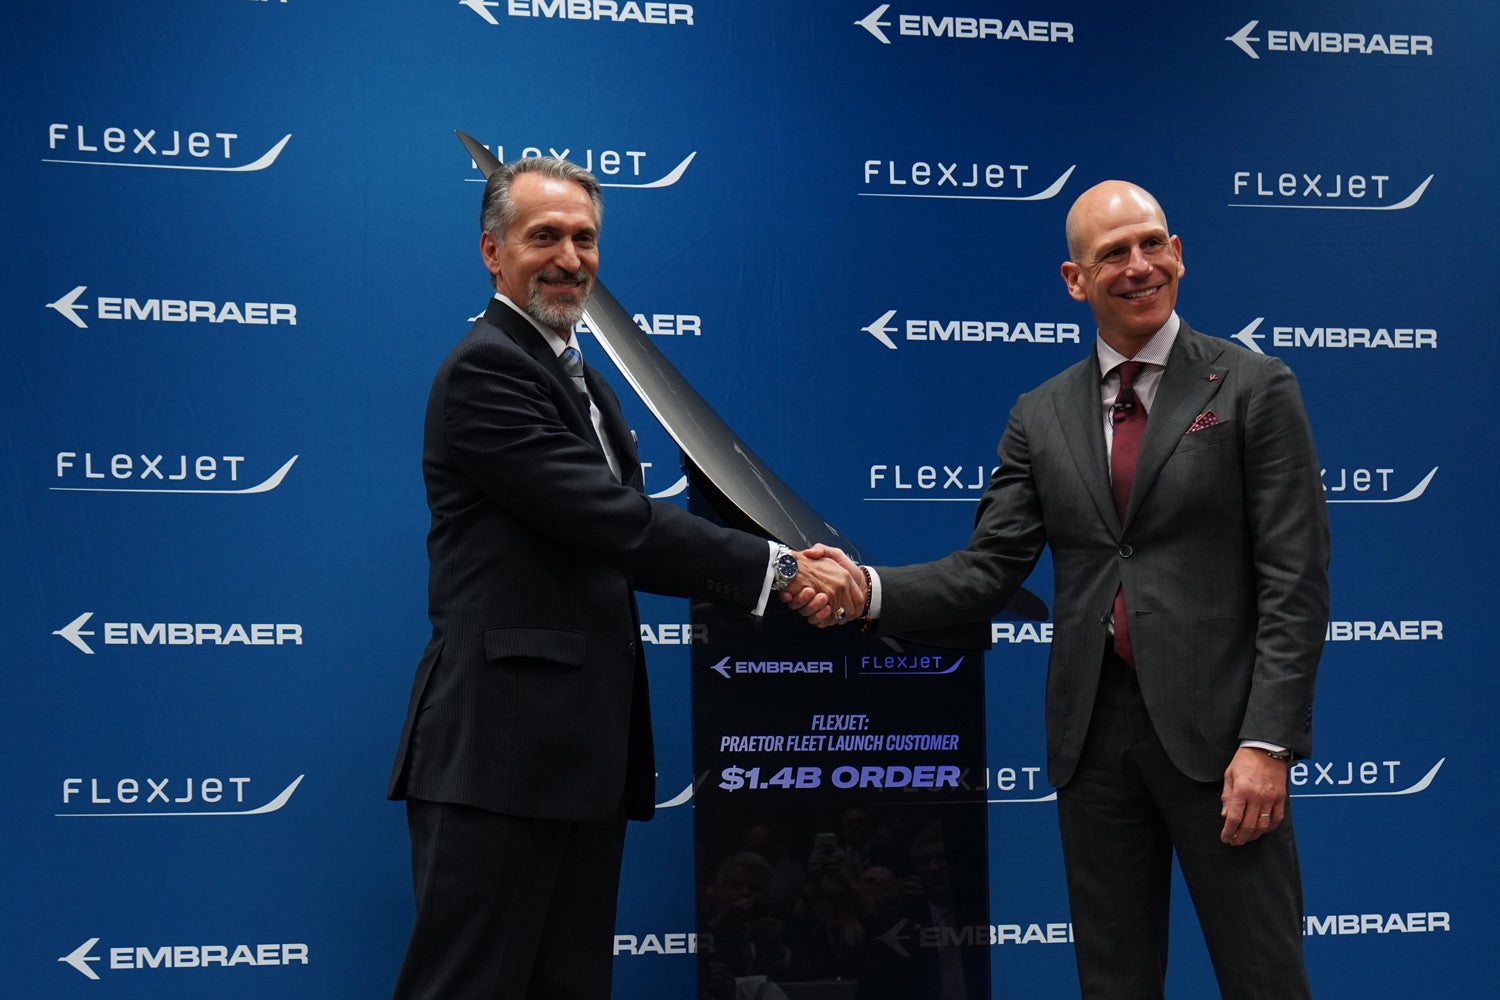 Embraer Signs Flexjet as Fleet Launch Customer for Praetor